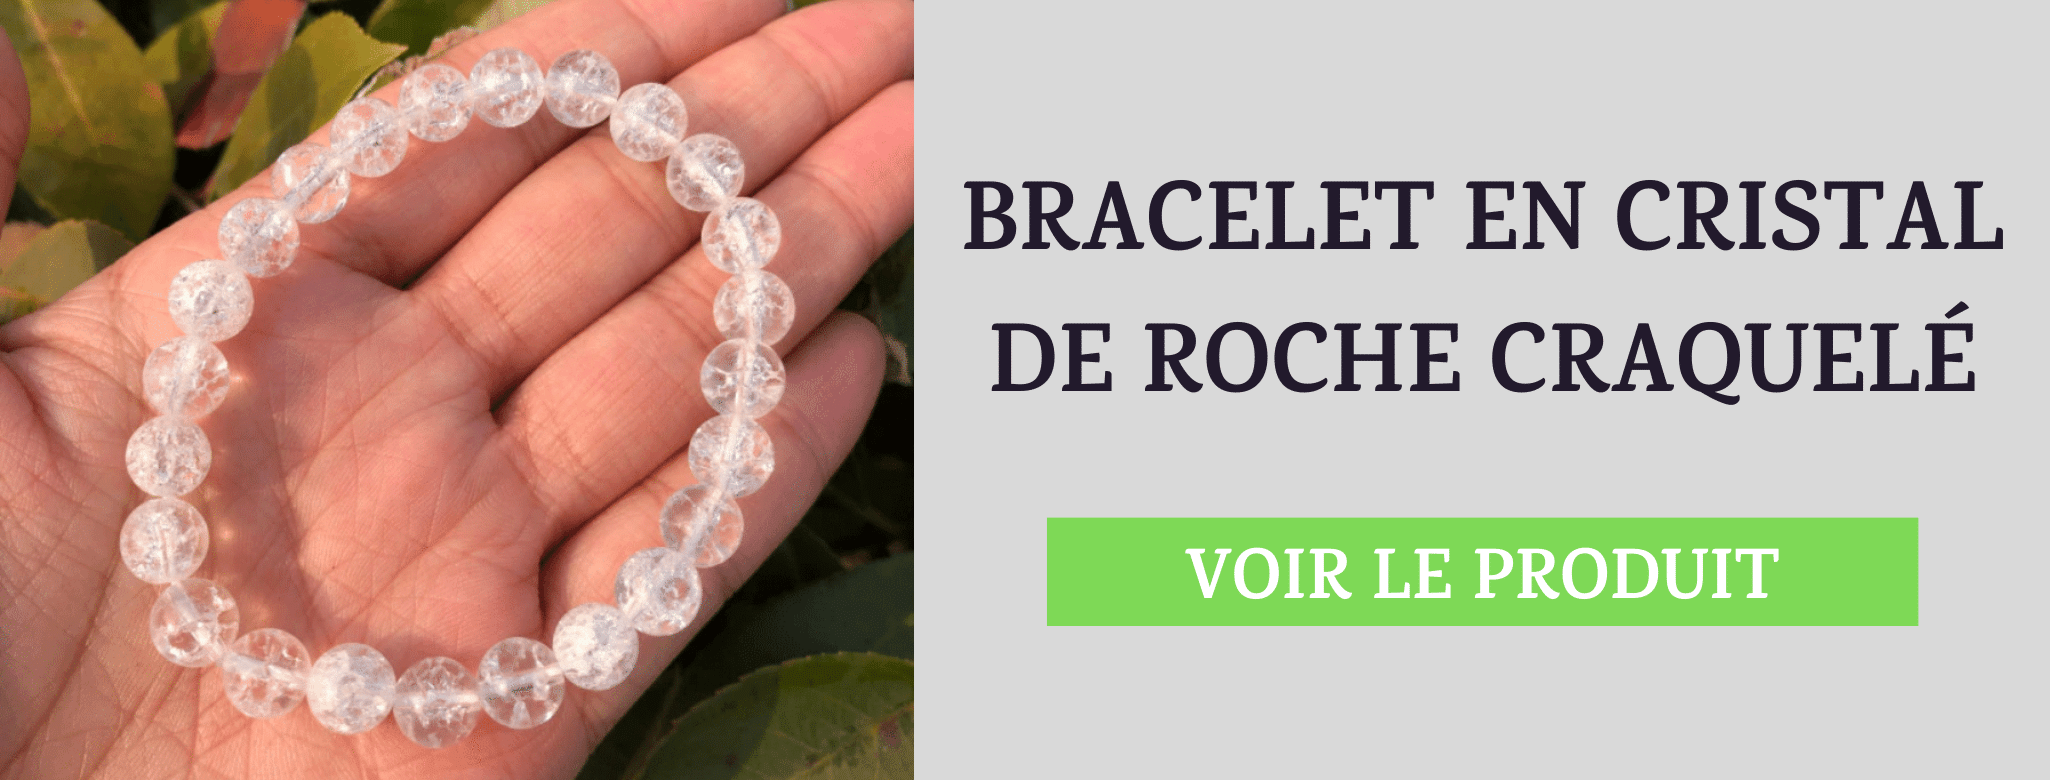 Bracelet Cristal de Roche Craquelé